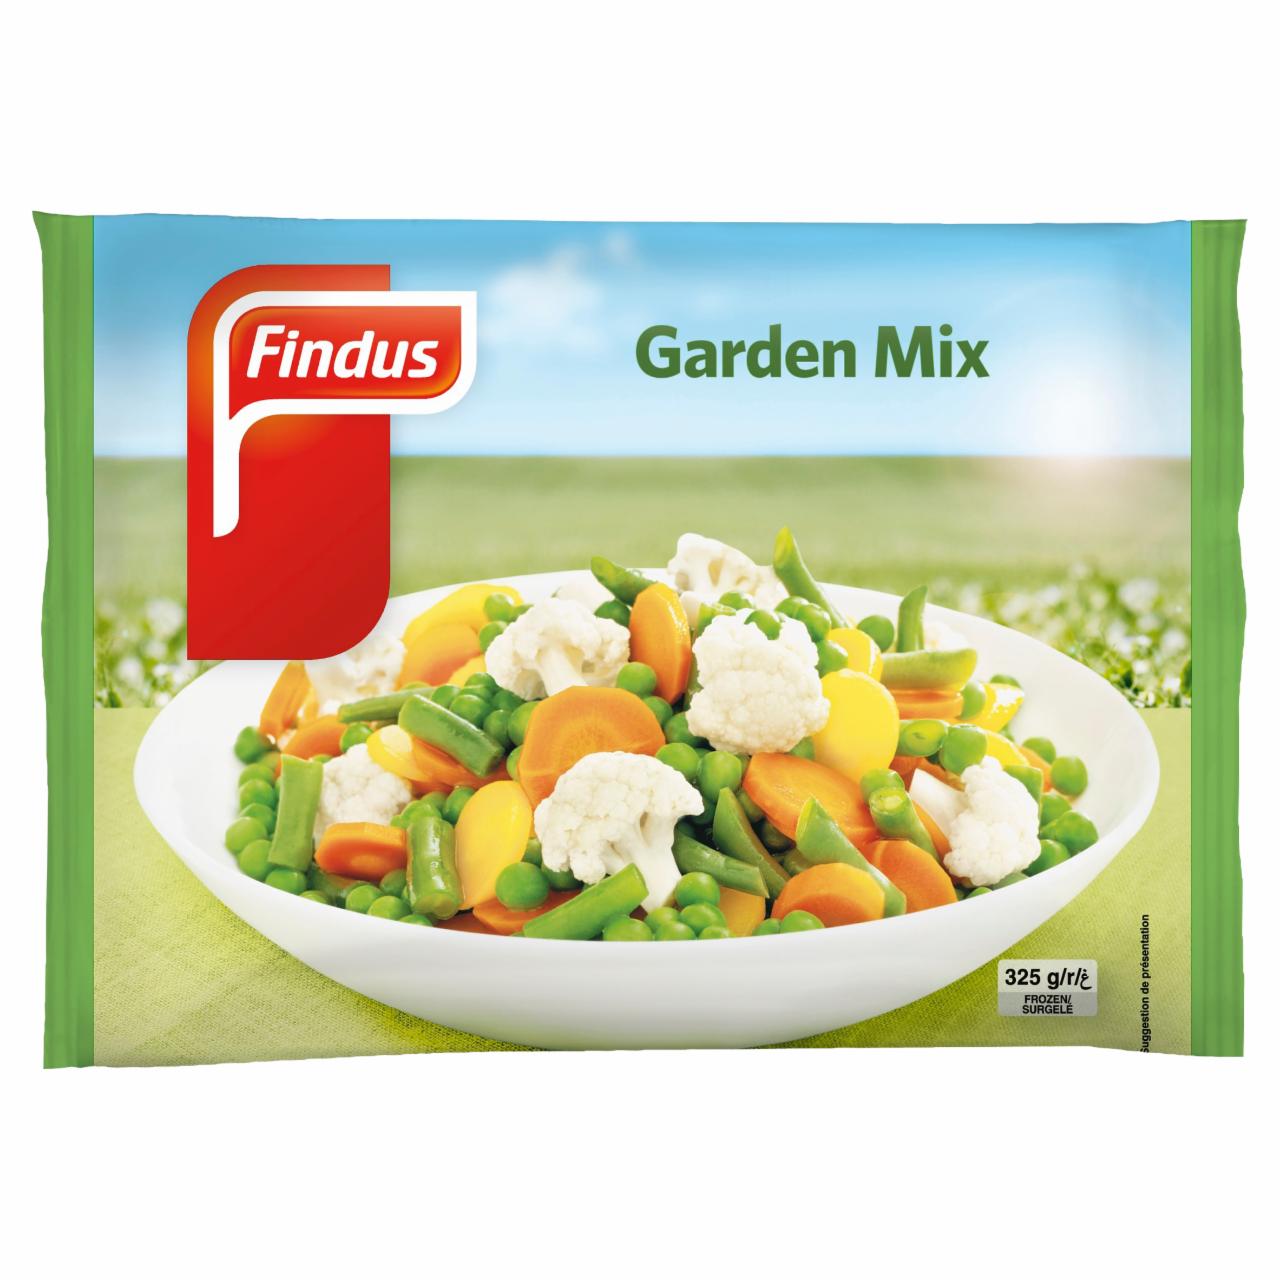 Képek - Findus Garden Mix előfőzött, gyorsfagyasztott kerti zöldségkeverék 325 g